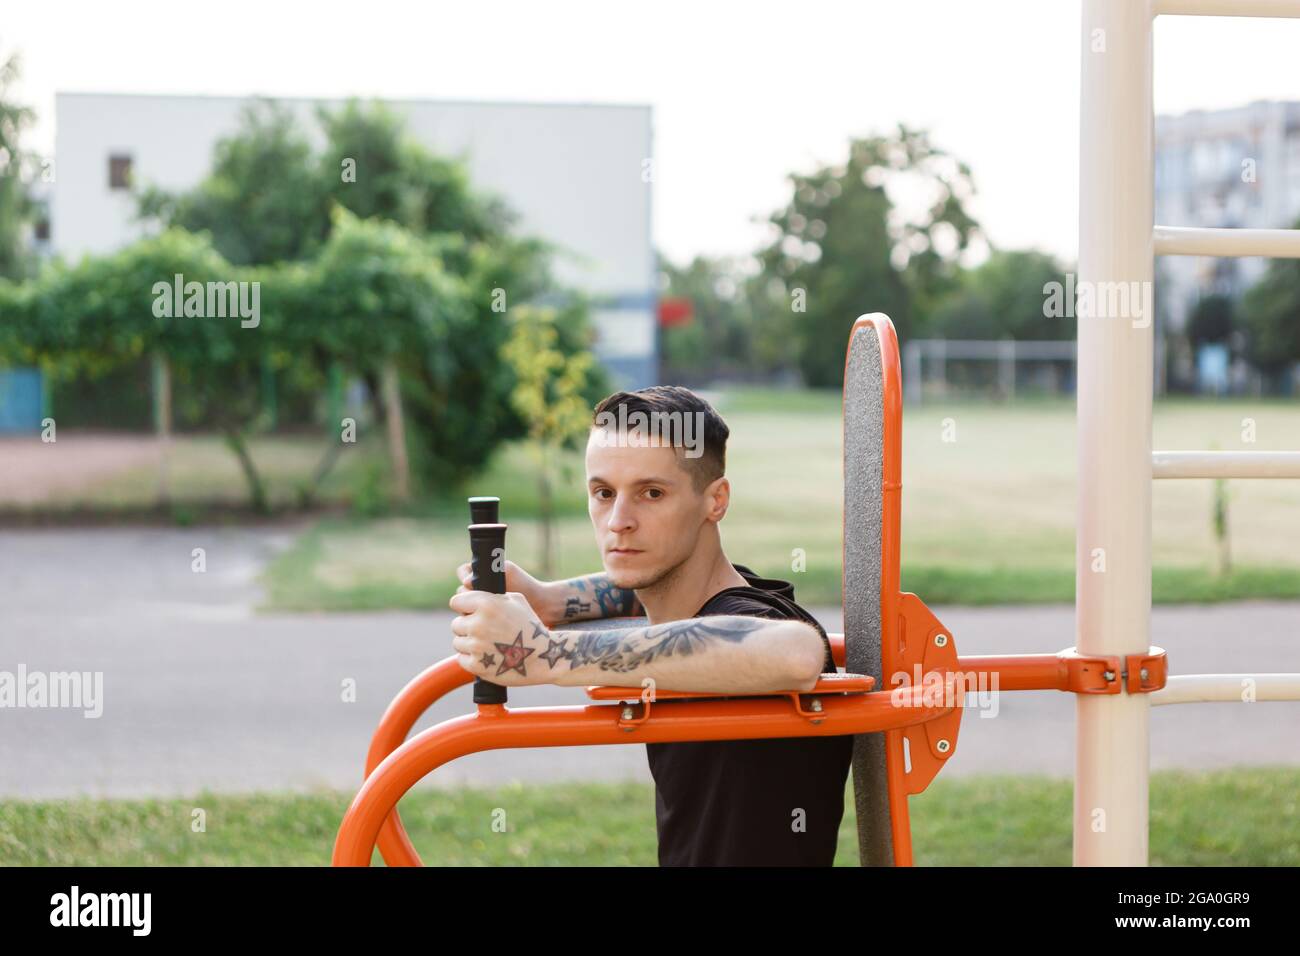 El hombre entrena fuera en el parque con equipos deportivos Foto de stock